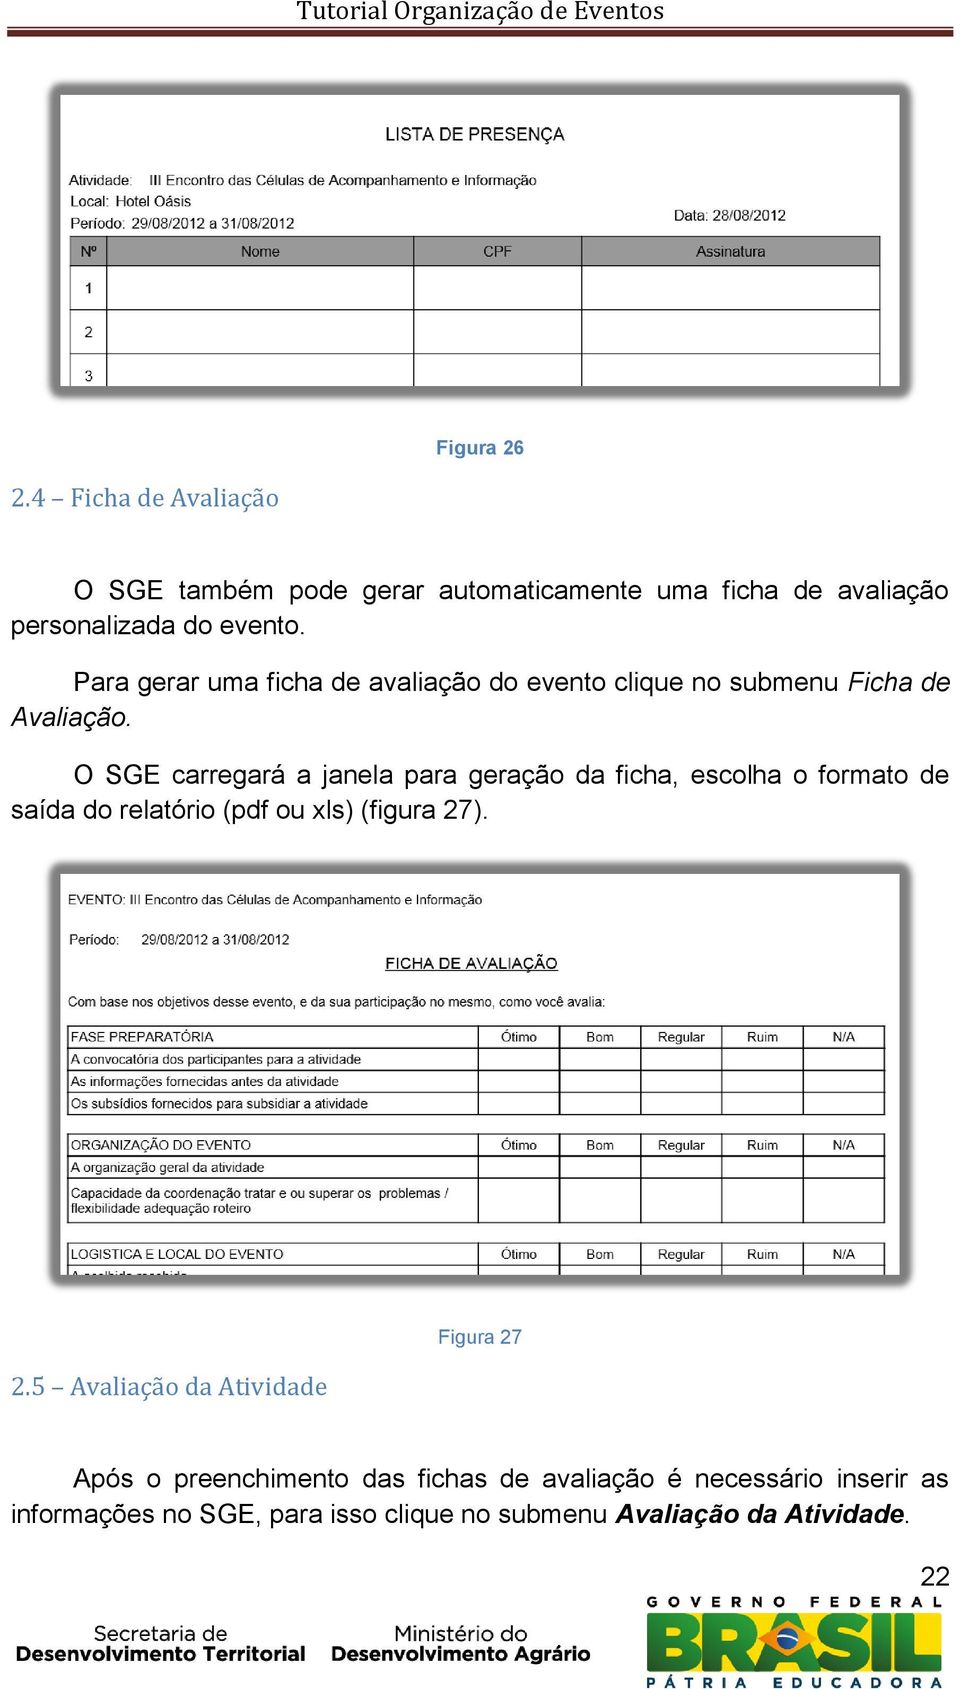 O SGE carregará a janela para geração da ficha, escolha o formato de saída do relatório (pdf ou xls) (figura 27